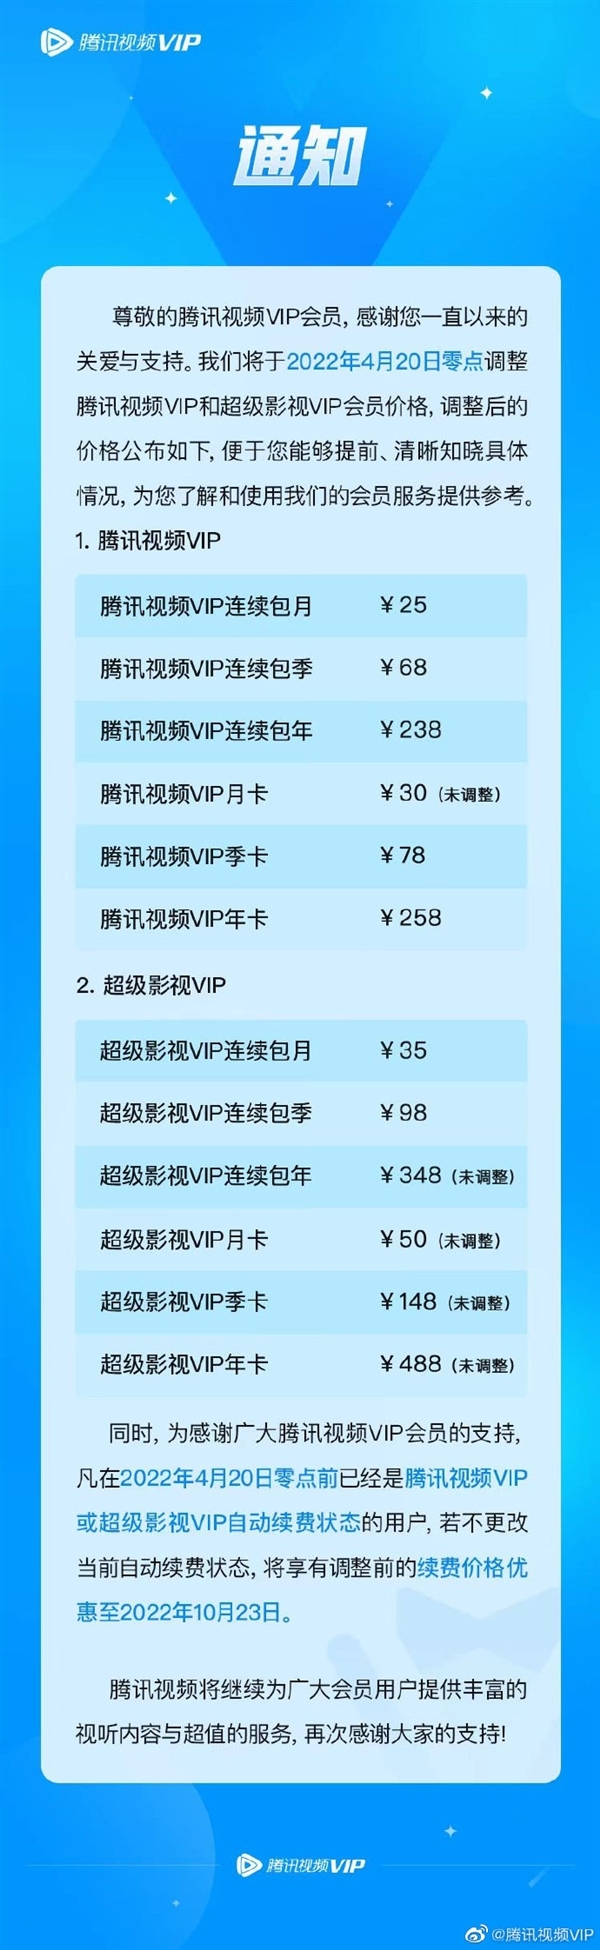 京东宣布与腾讯视频联名卡价格上调